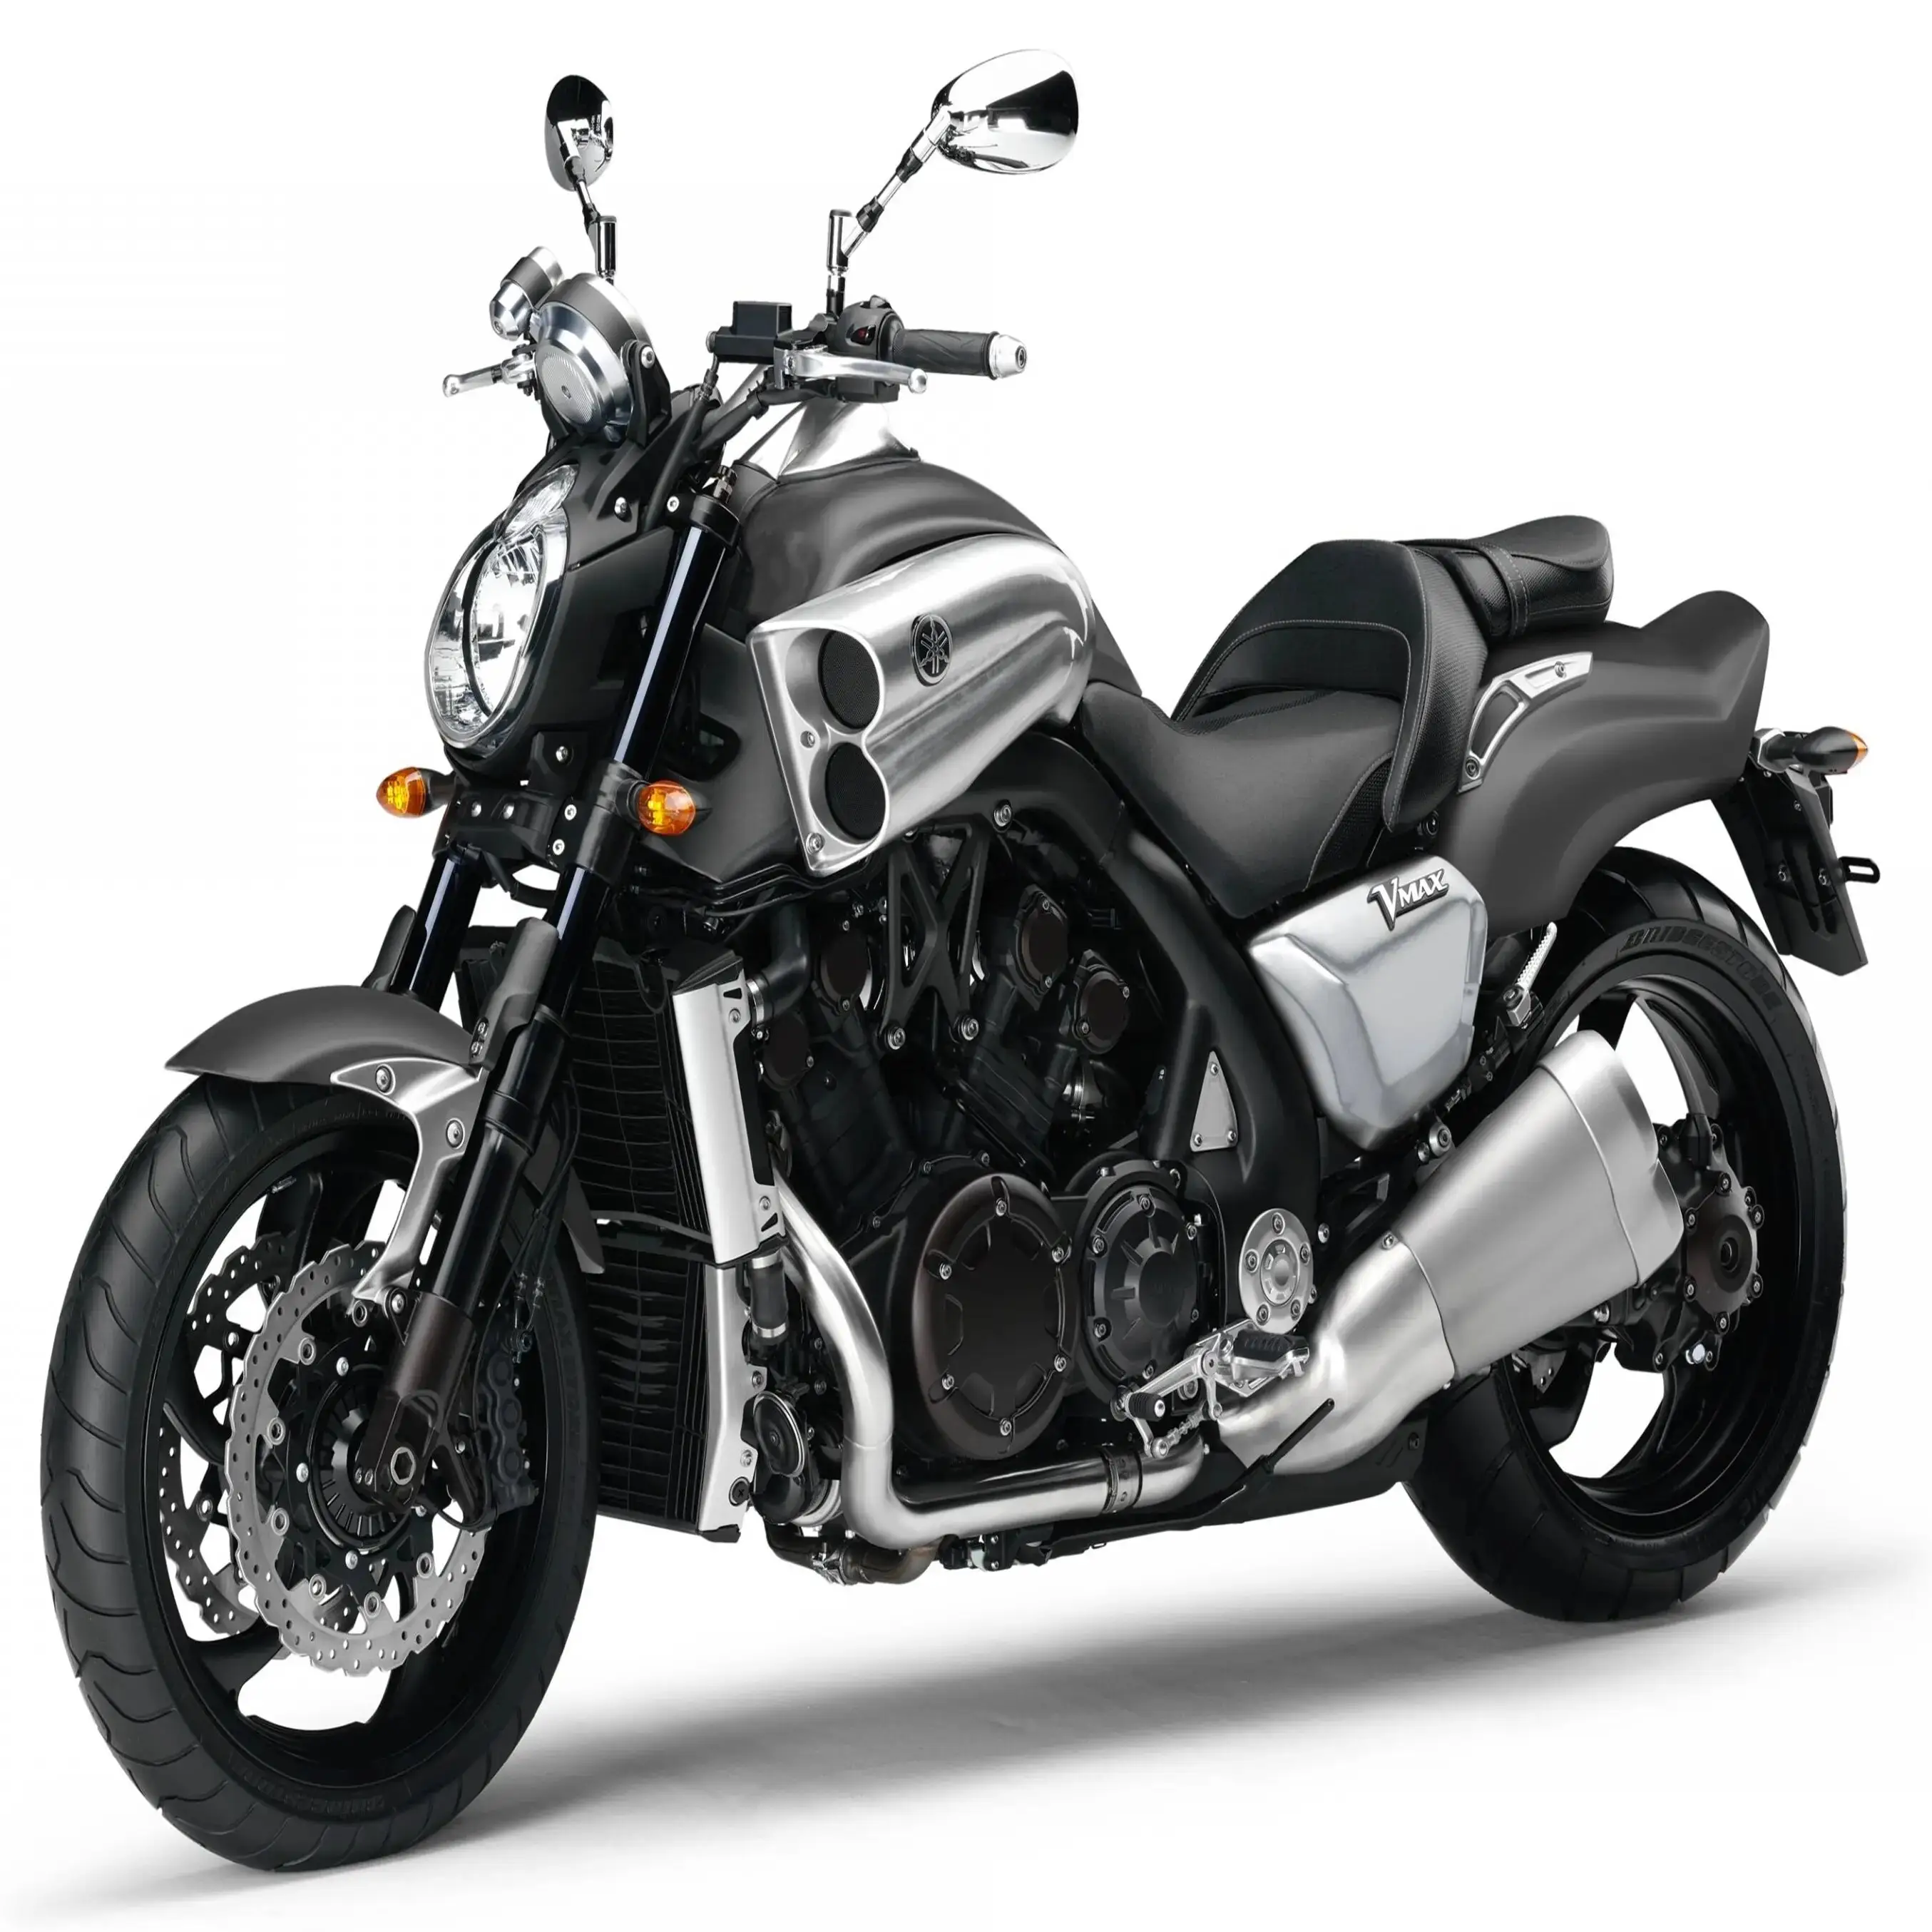 VERKAUF NEUZUGANG PROMO 2023 brandneue 1.700cc Yamahas V Max Motorräder zum Verkauf versandfertig